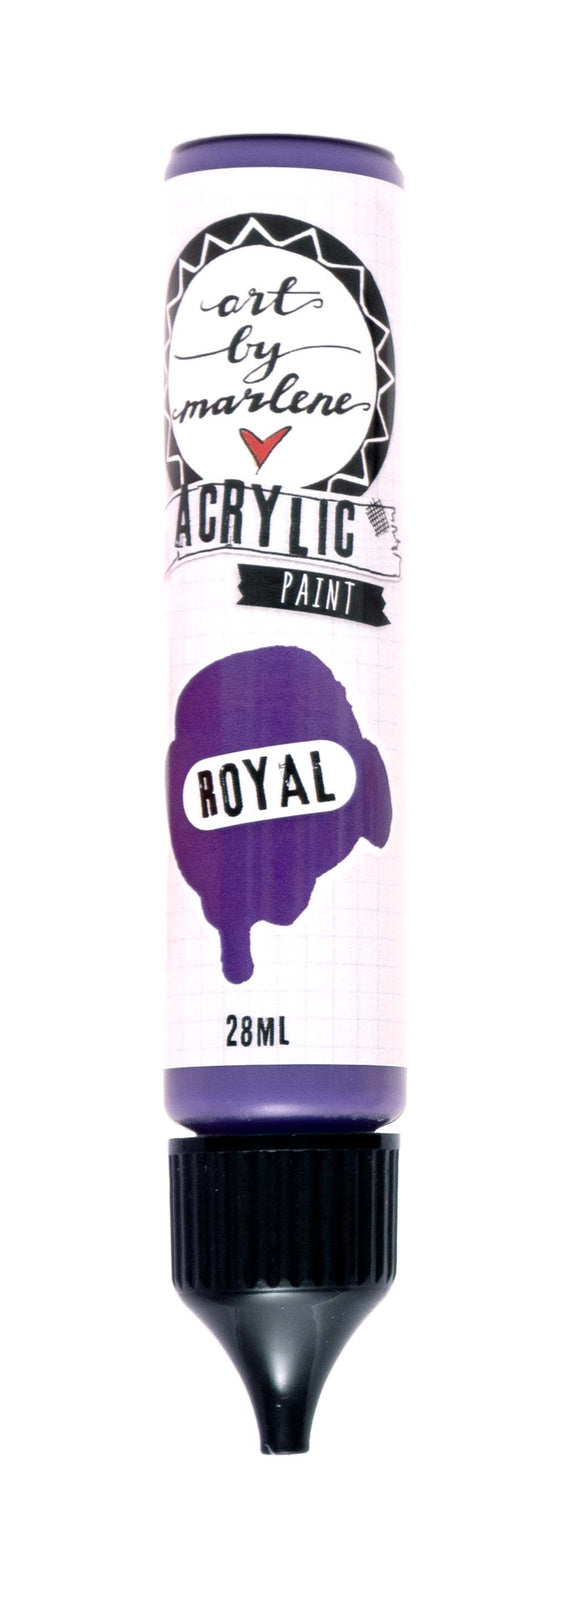 Acrylic Paint - Royal : (ABM) ACP33